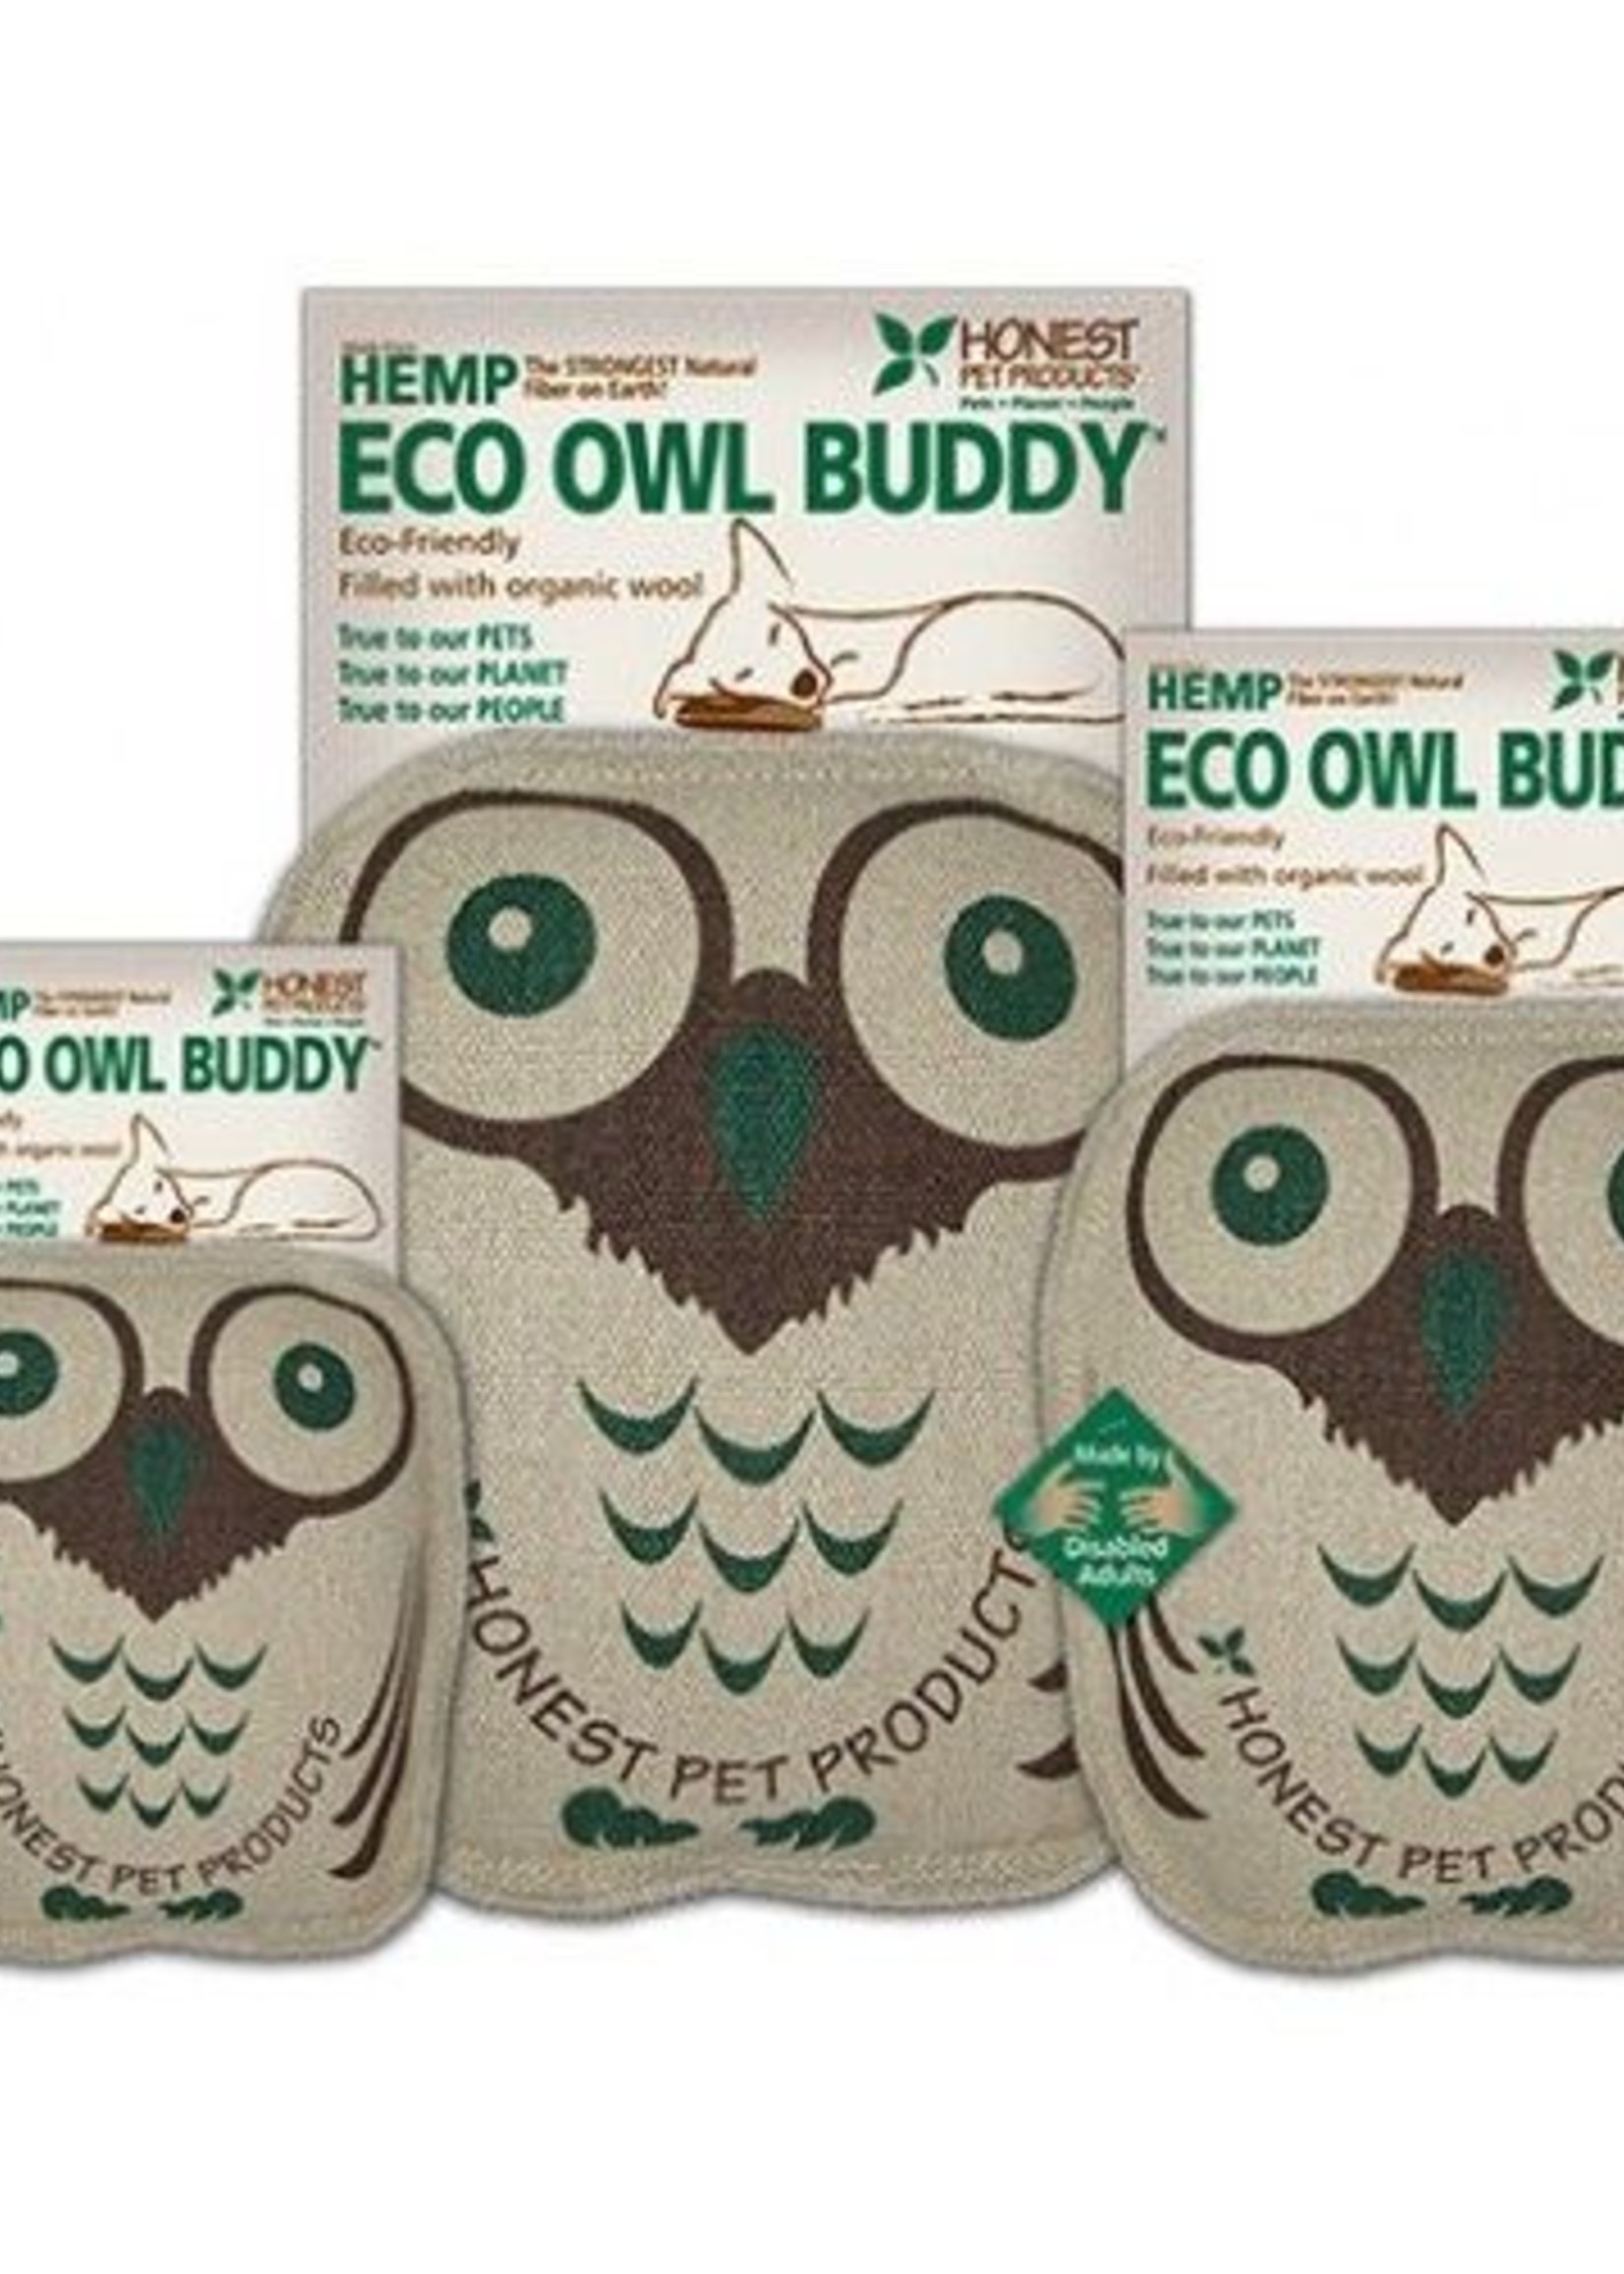 Honest Pets Eco Owl Buddy